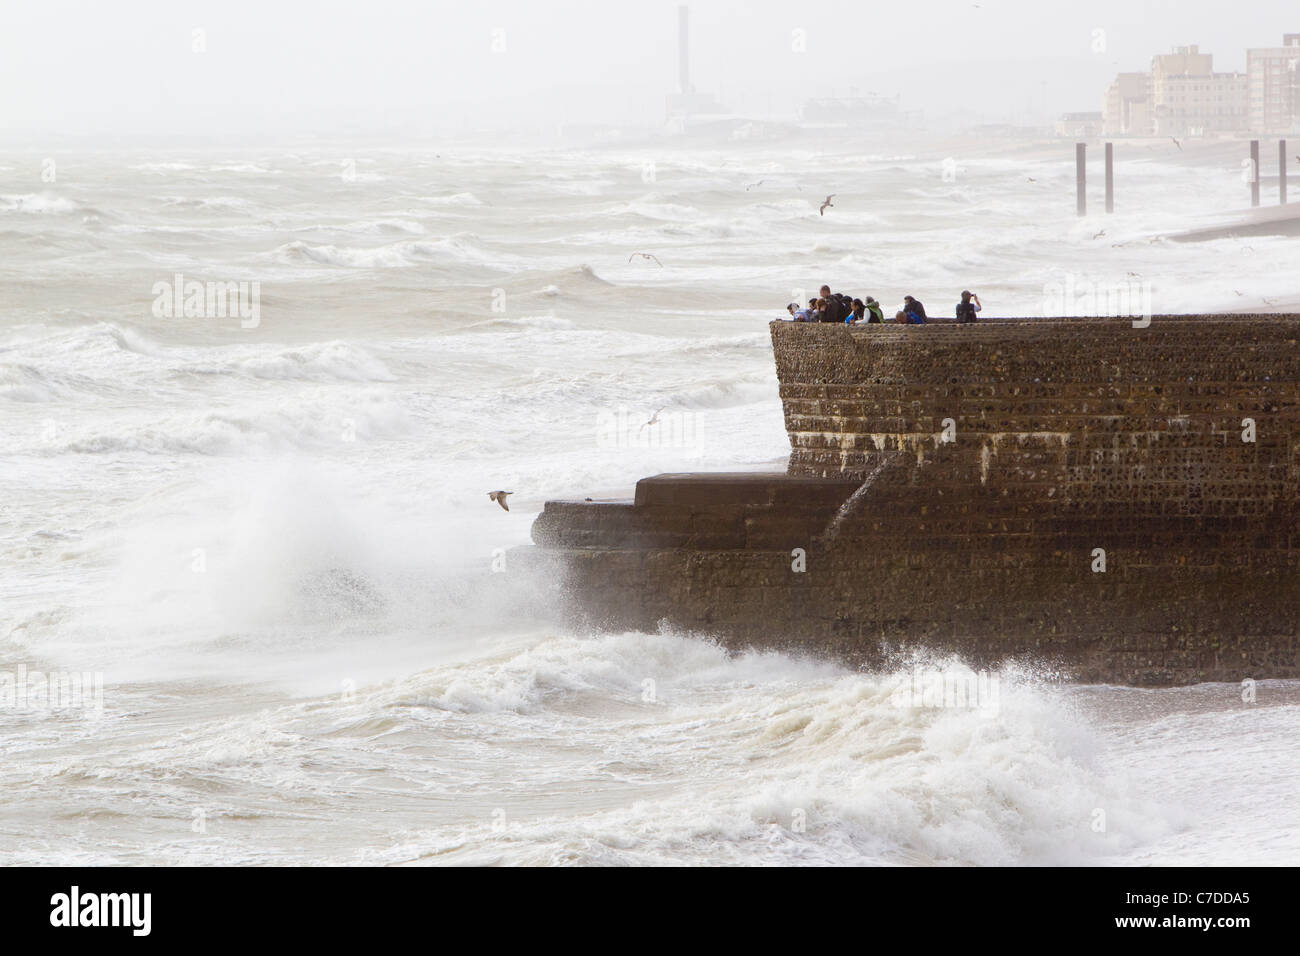 Gerade des Sturms, Menschen stehen auf einer Buhne, Blick auf das Meer, Brighton, East Sussex, UK, Herbst Stockfoto